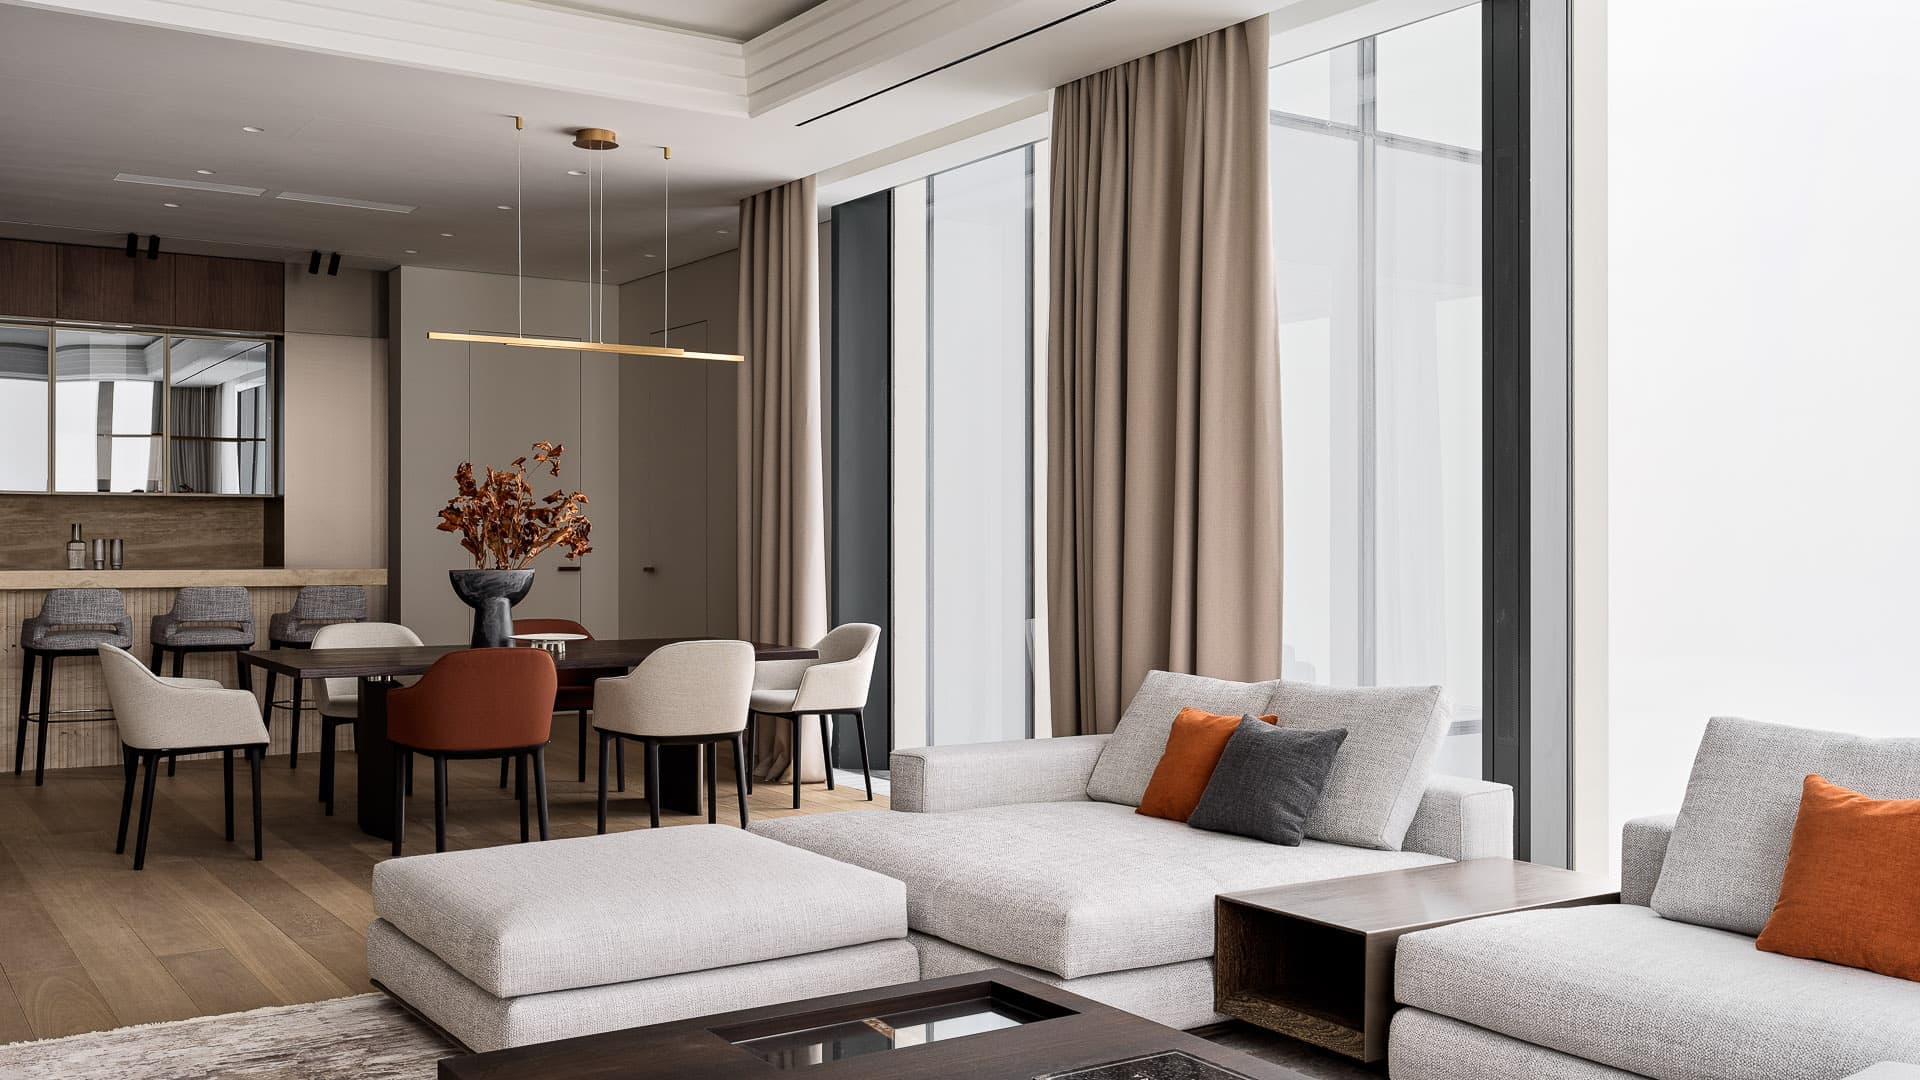 Премиальные материалы и умное зонирование в интерьере квартиры на 64-м этаже небоскреба — проект Анастасии Дэйви и Натальи Шибановой